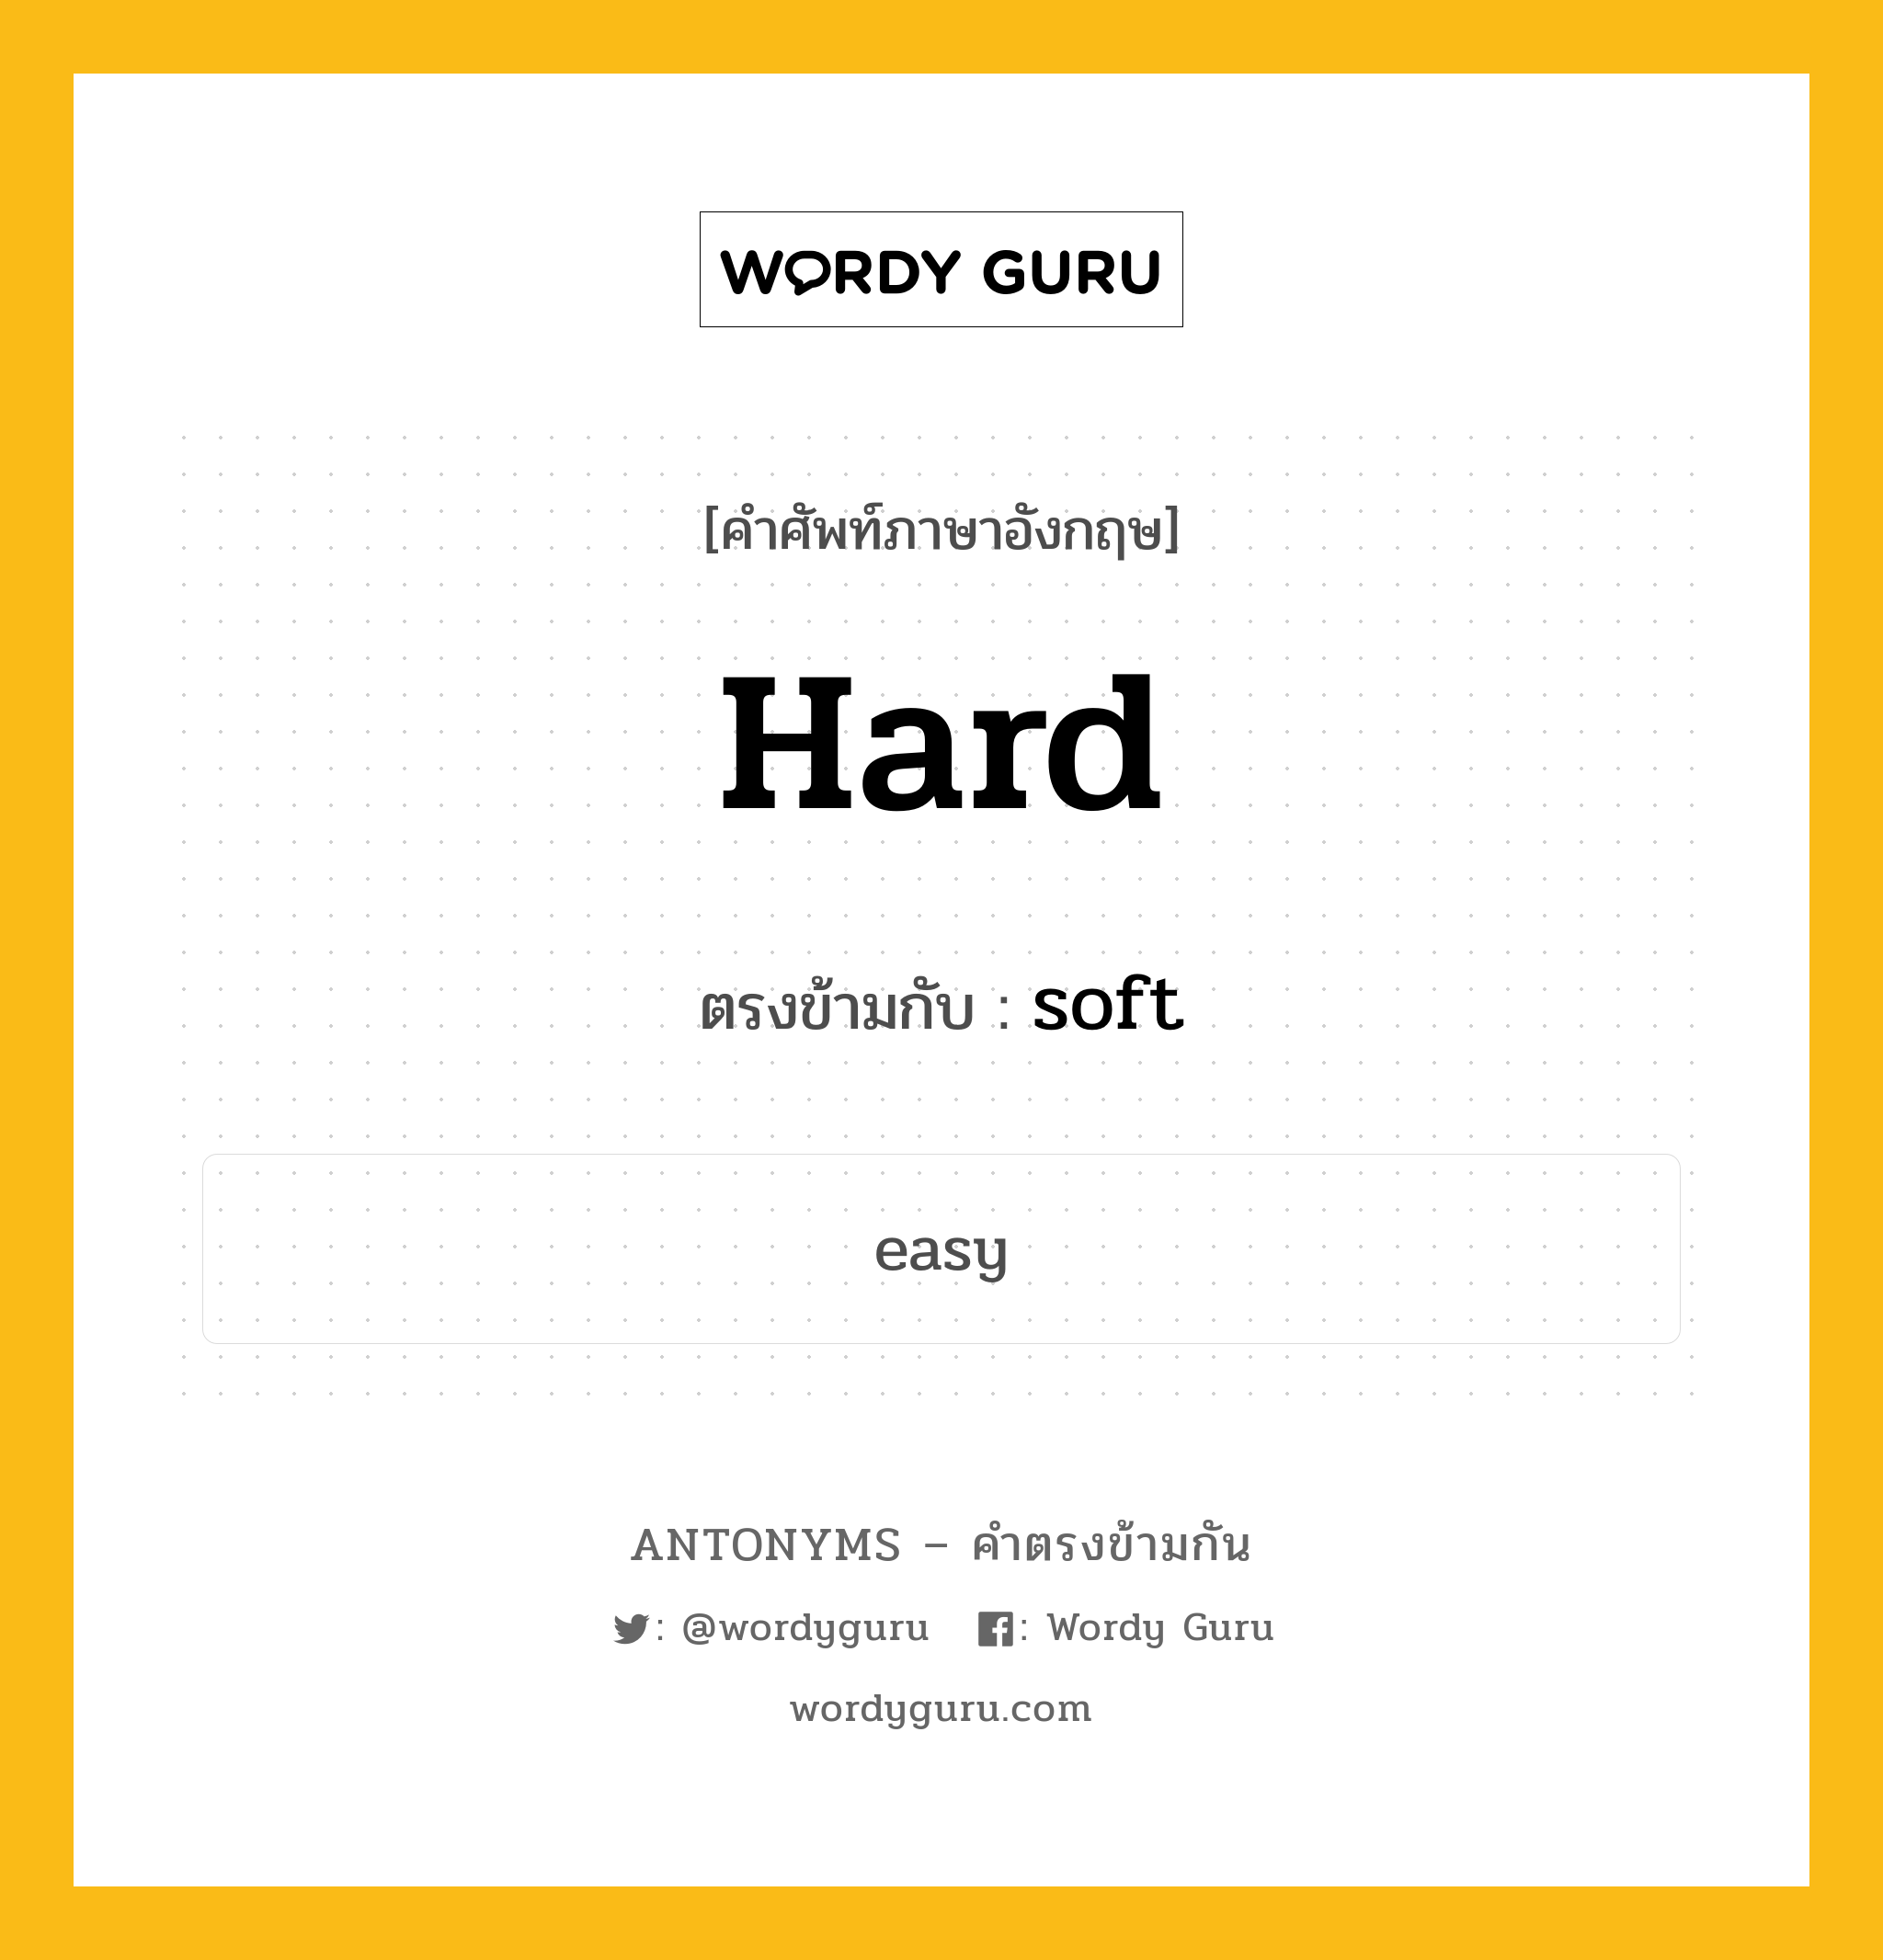 hard เป็นคำตรงข้ามกับคำไหนบ้าง?, คำศัพท์ภาษาอังกฤษ hard ตรงข้ามกับ soft หมวด soft